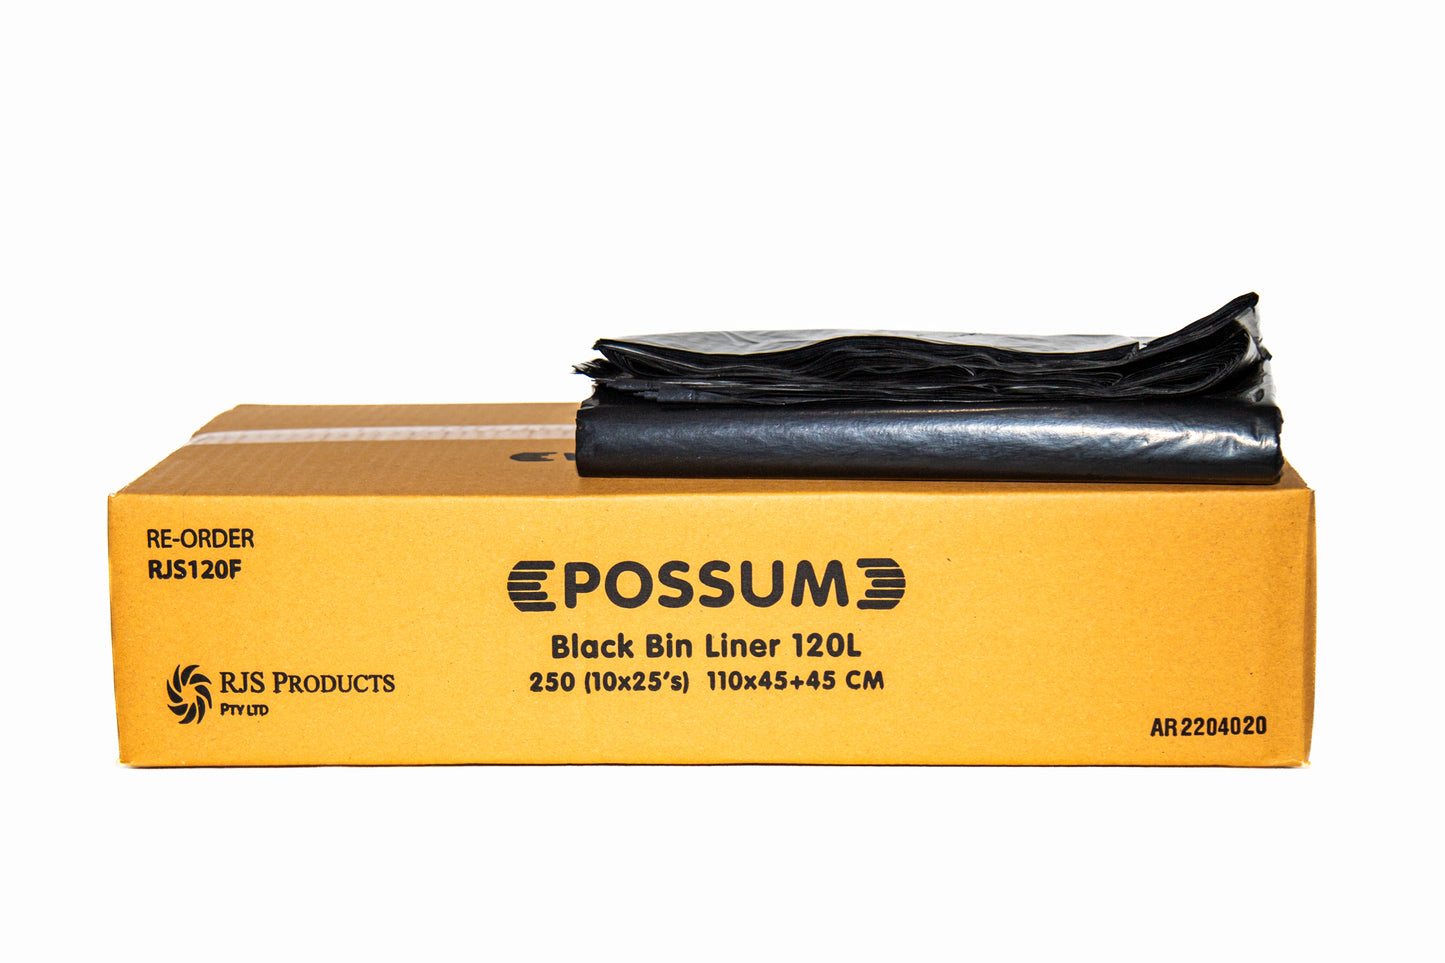 Possum Bin Liner 120L Black 250pc